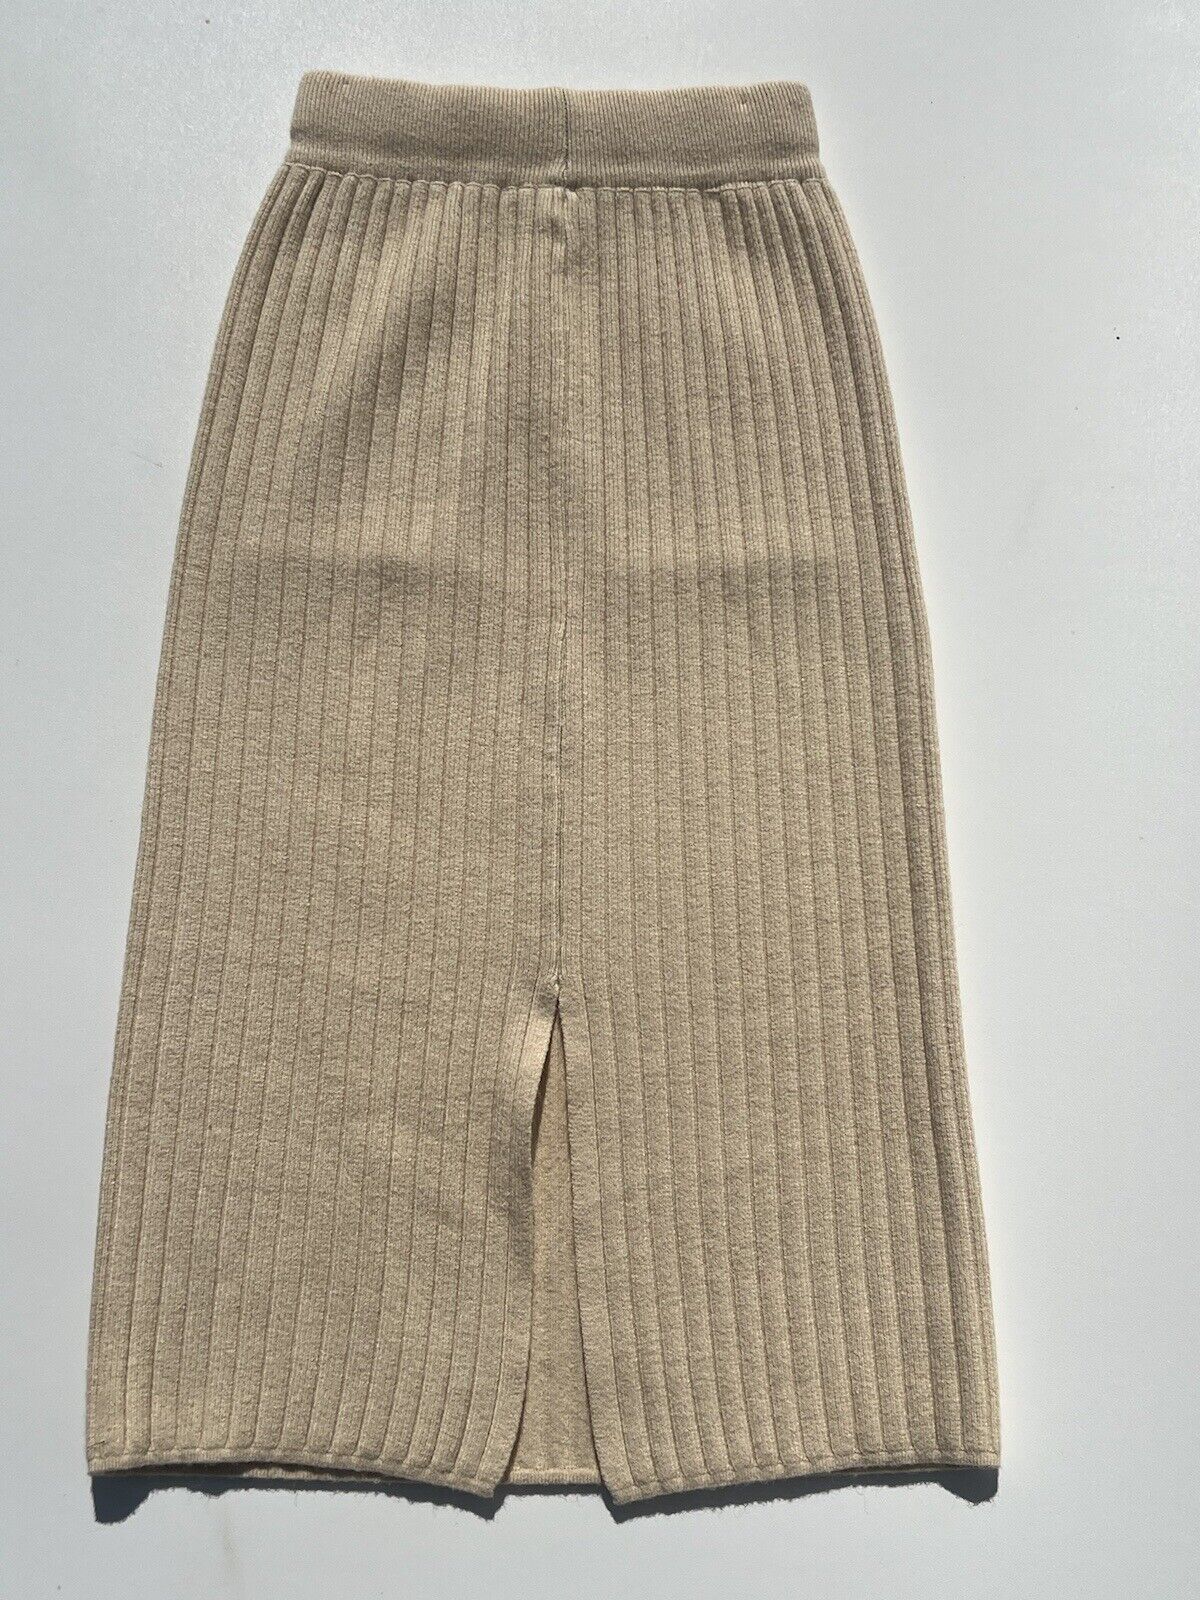 Alexander McQueen Pencil Skirt in Beige- X Small - image 13